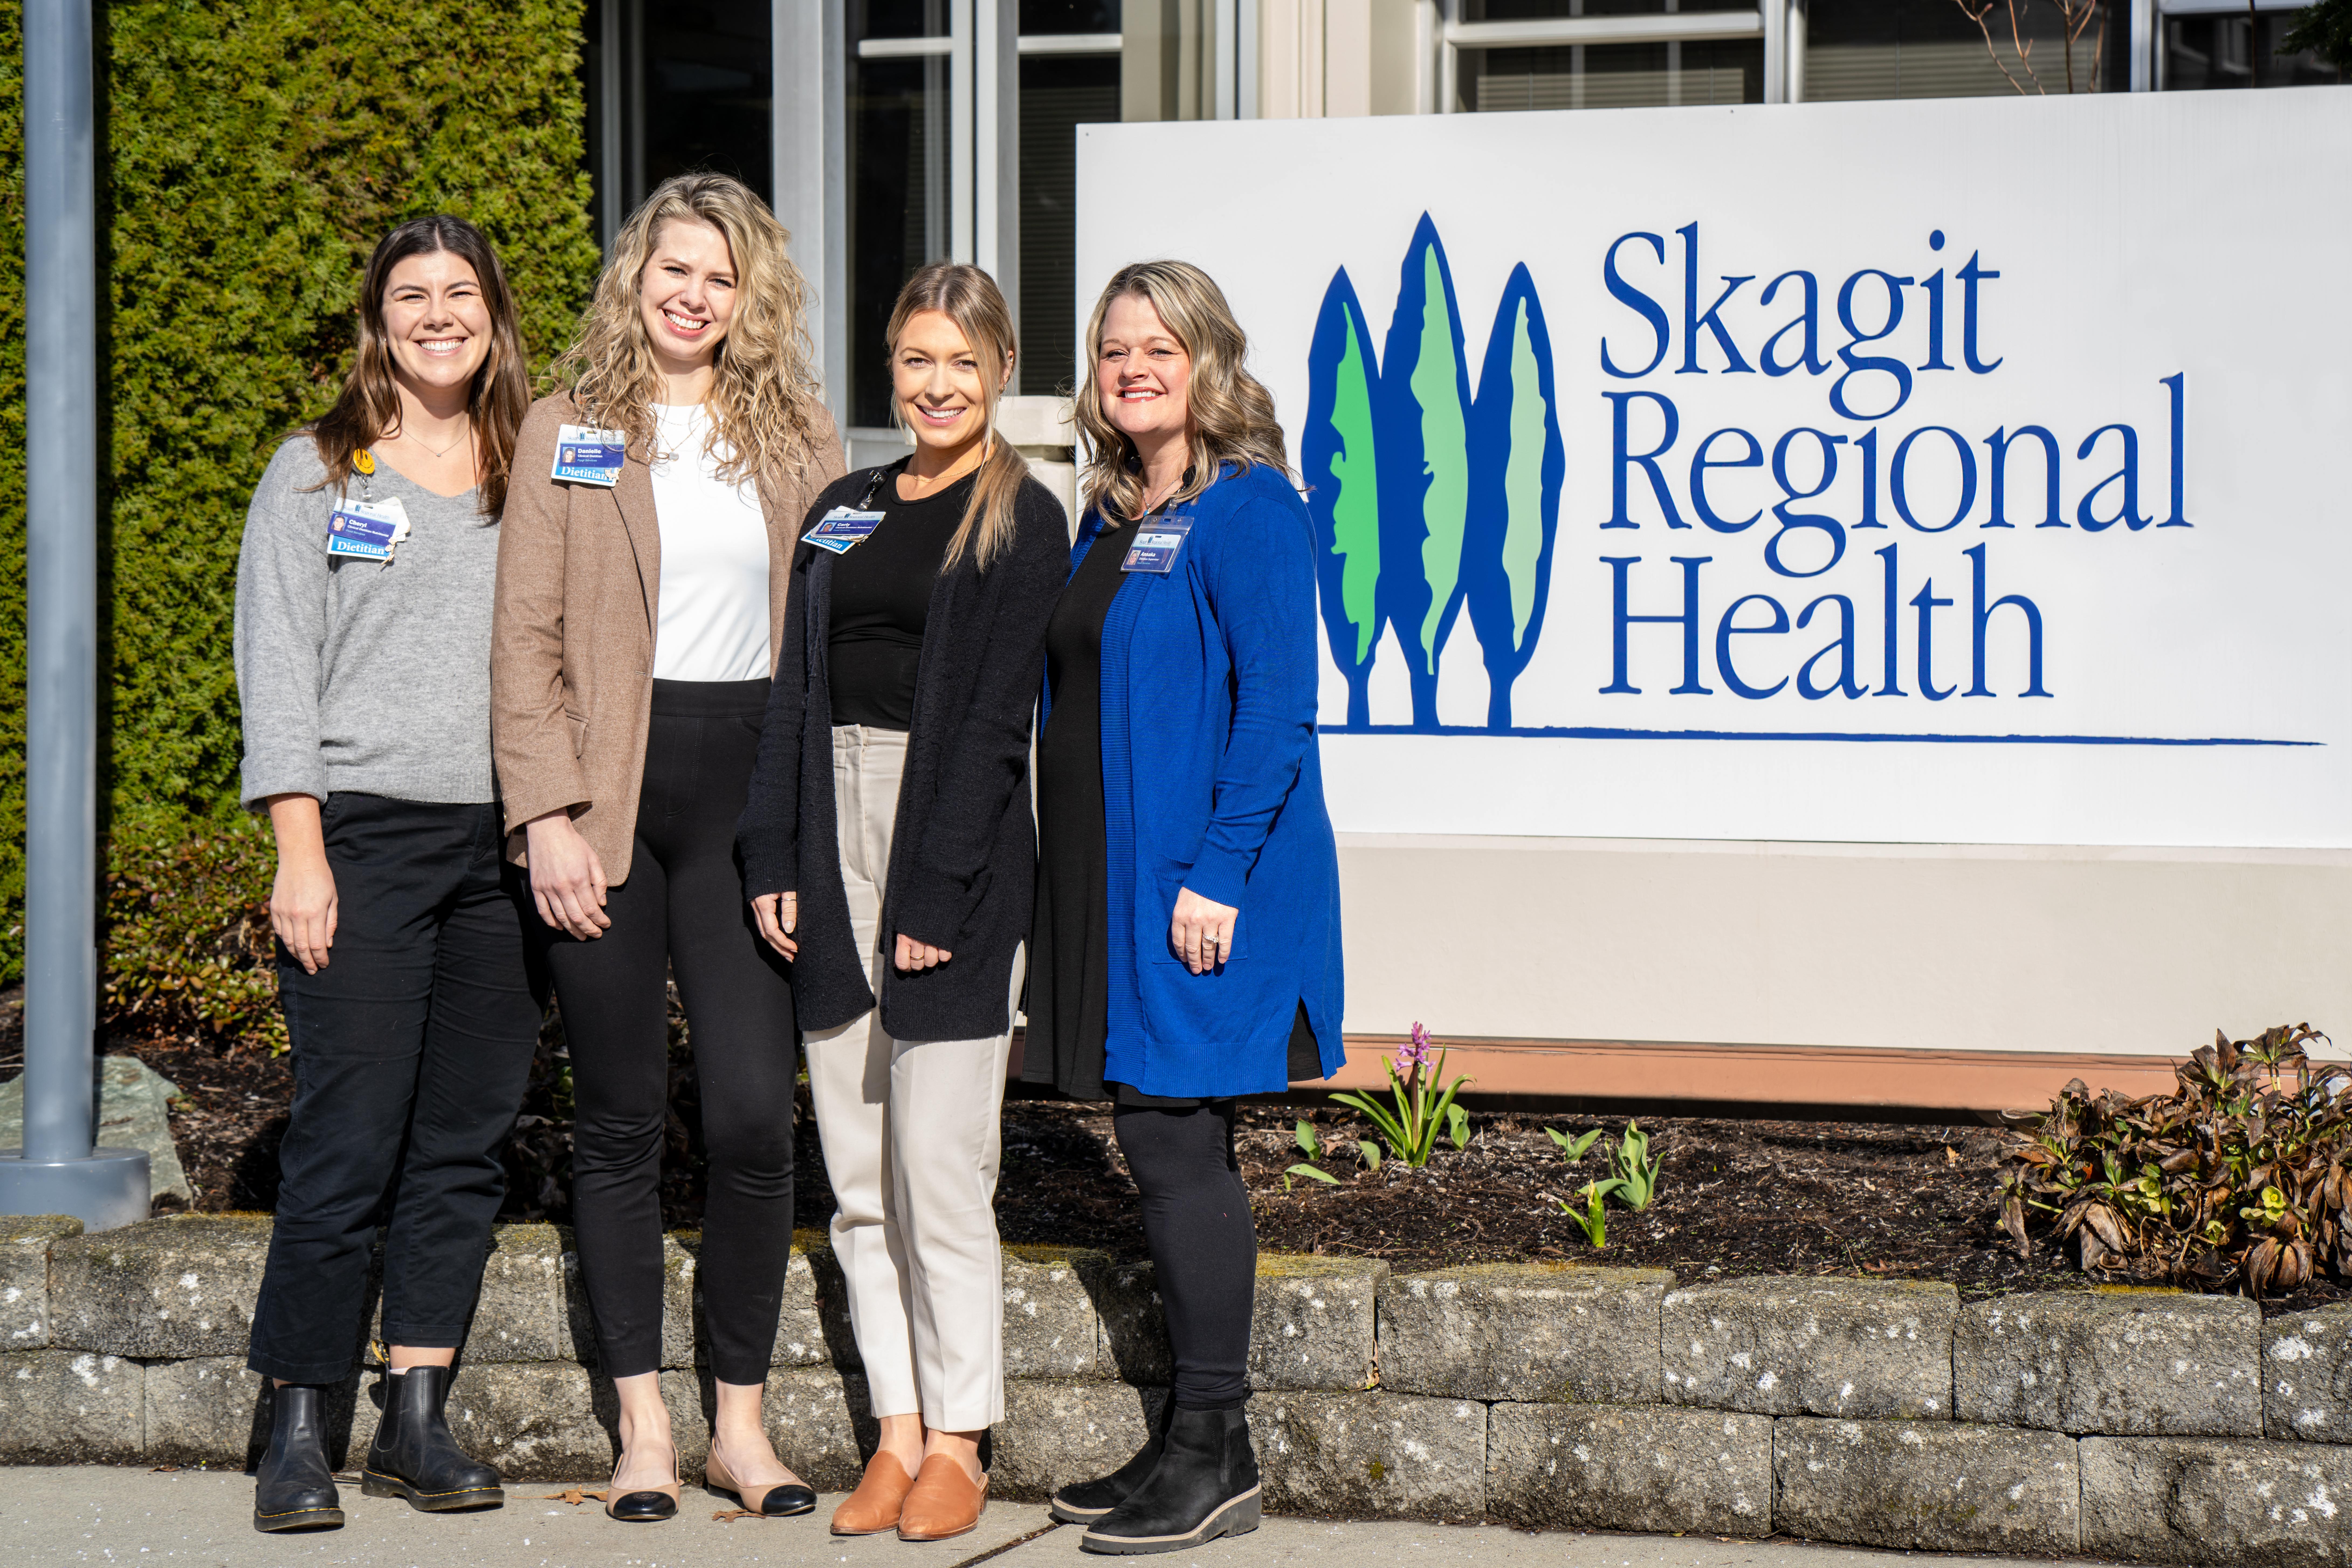 Cuatro mujeres posan juntas a la izquierda del cartel de Skagit Regional Health en exteriores.